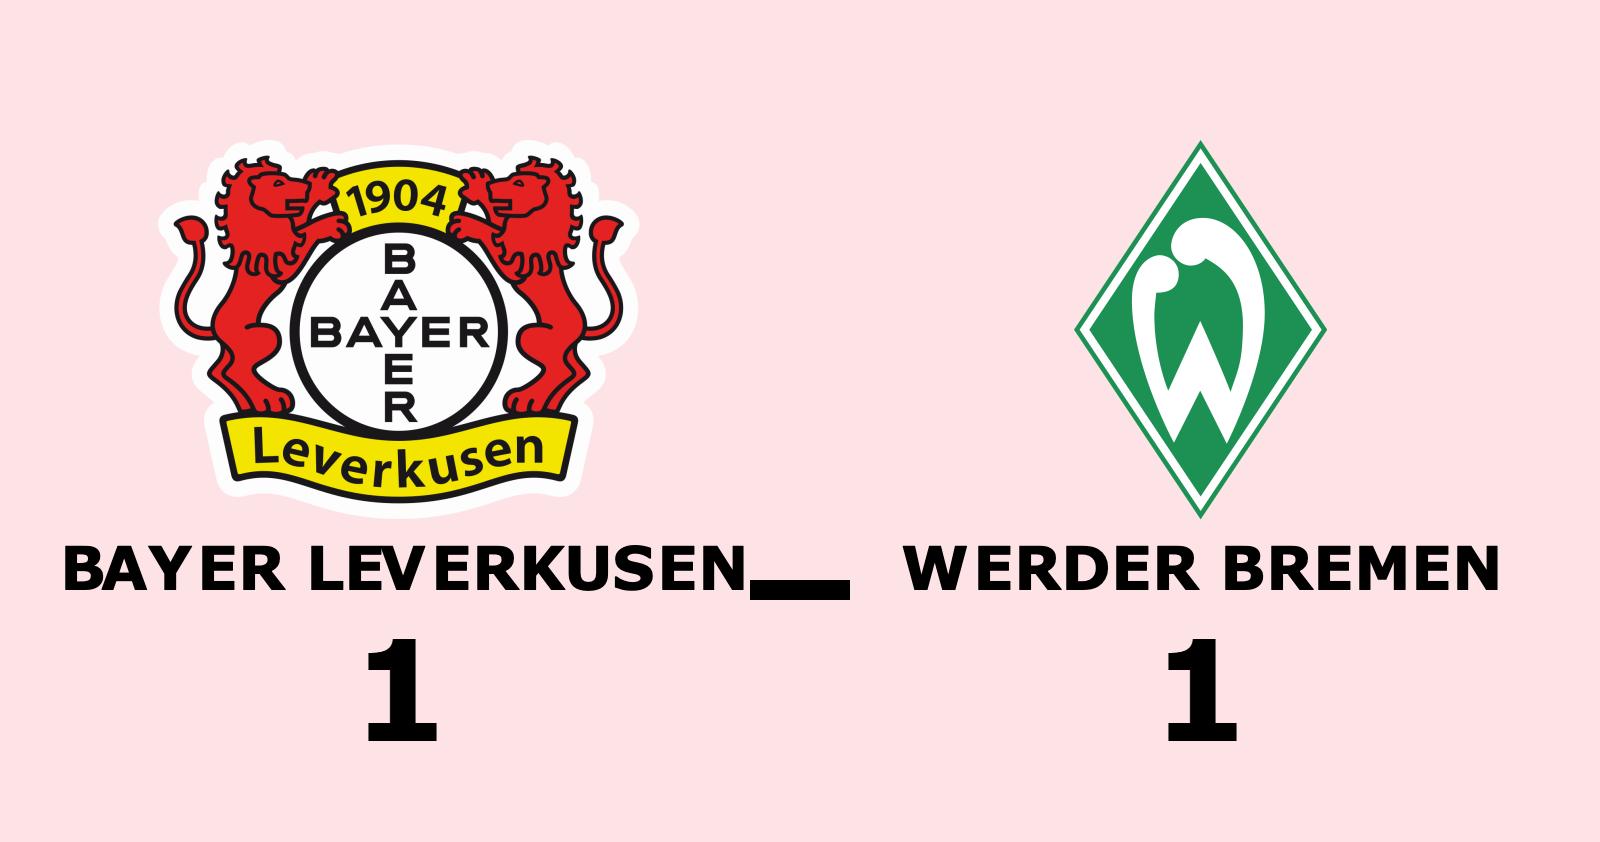 Stark insats när Werder Bremen tog poäng borta mot Bayer Leverkusen